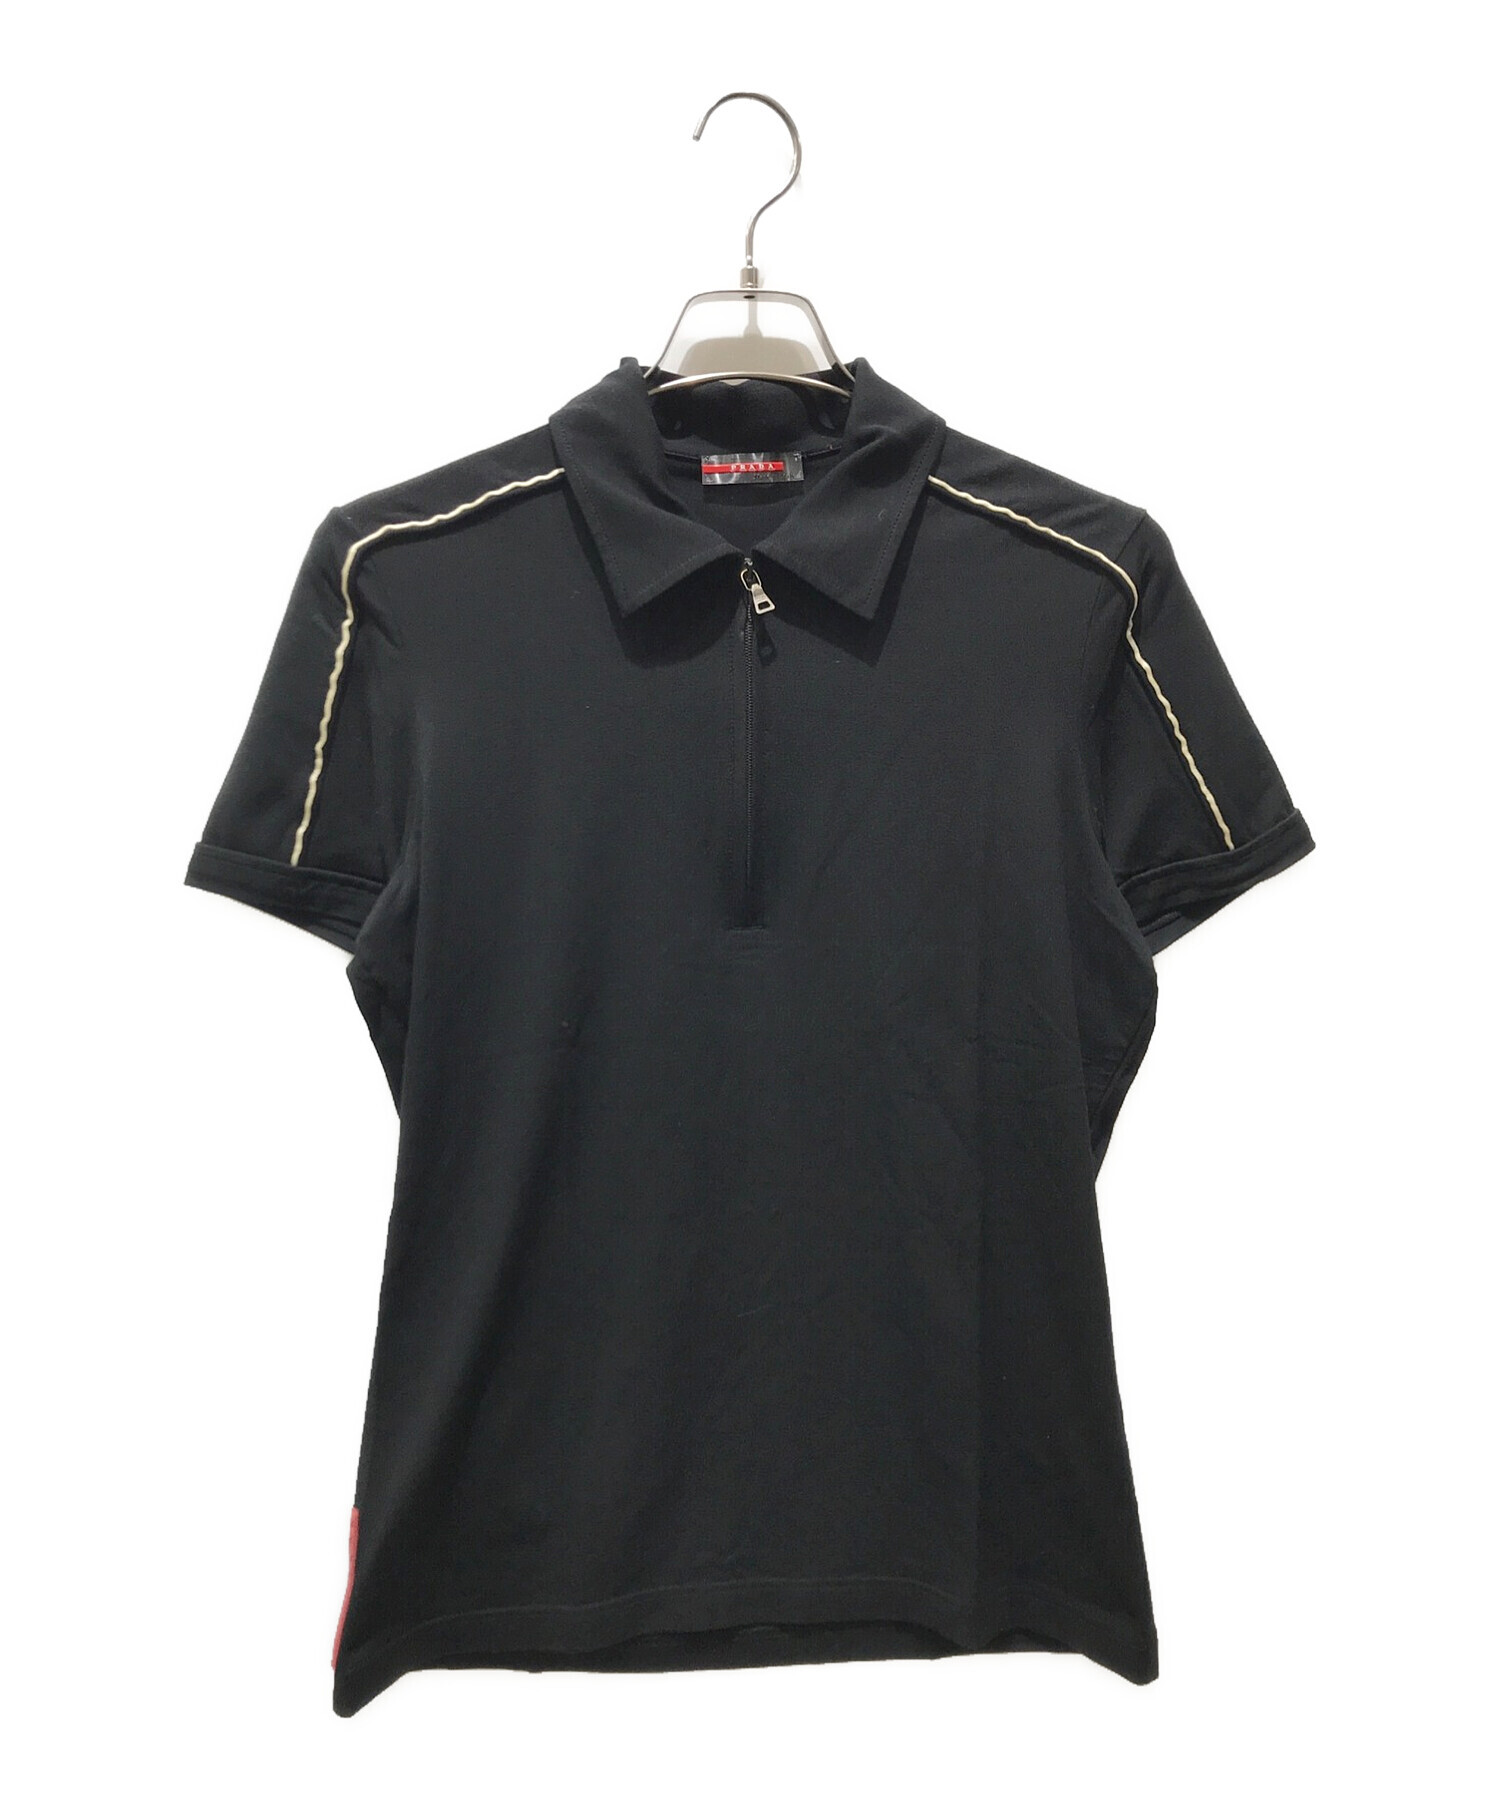 PRADA SPORTS (プラダスポーツ) ジップポロシャツ ブラック サイズ:S